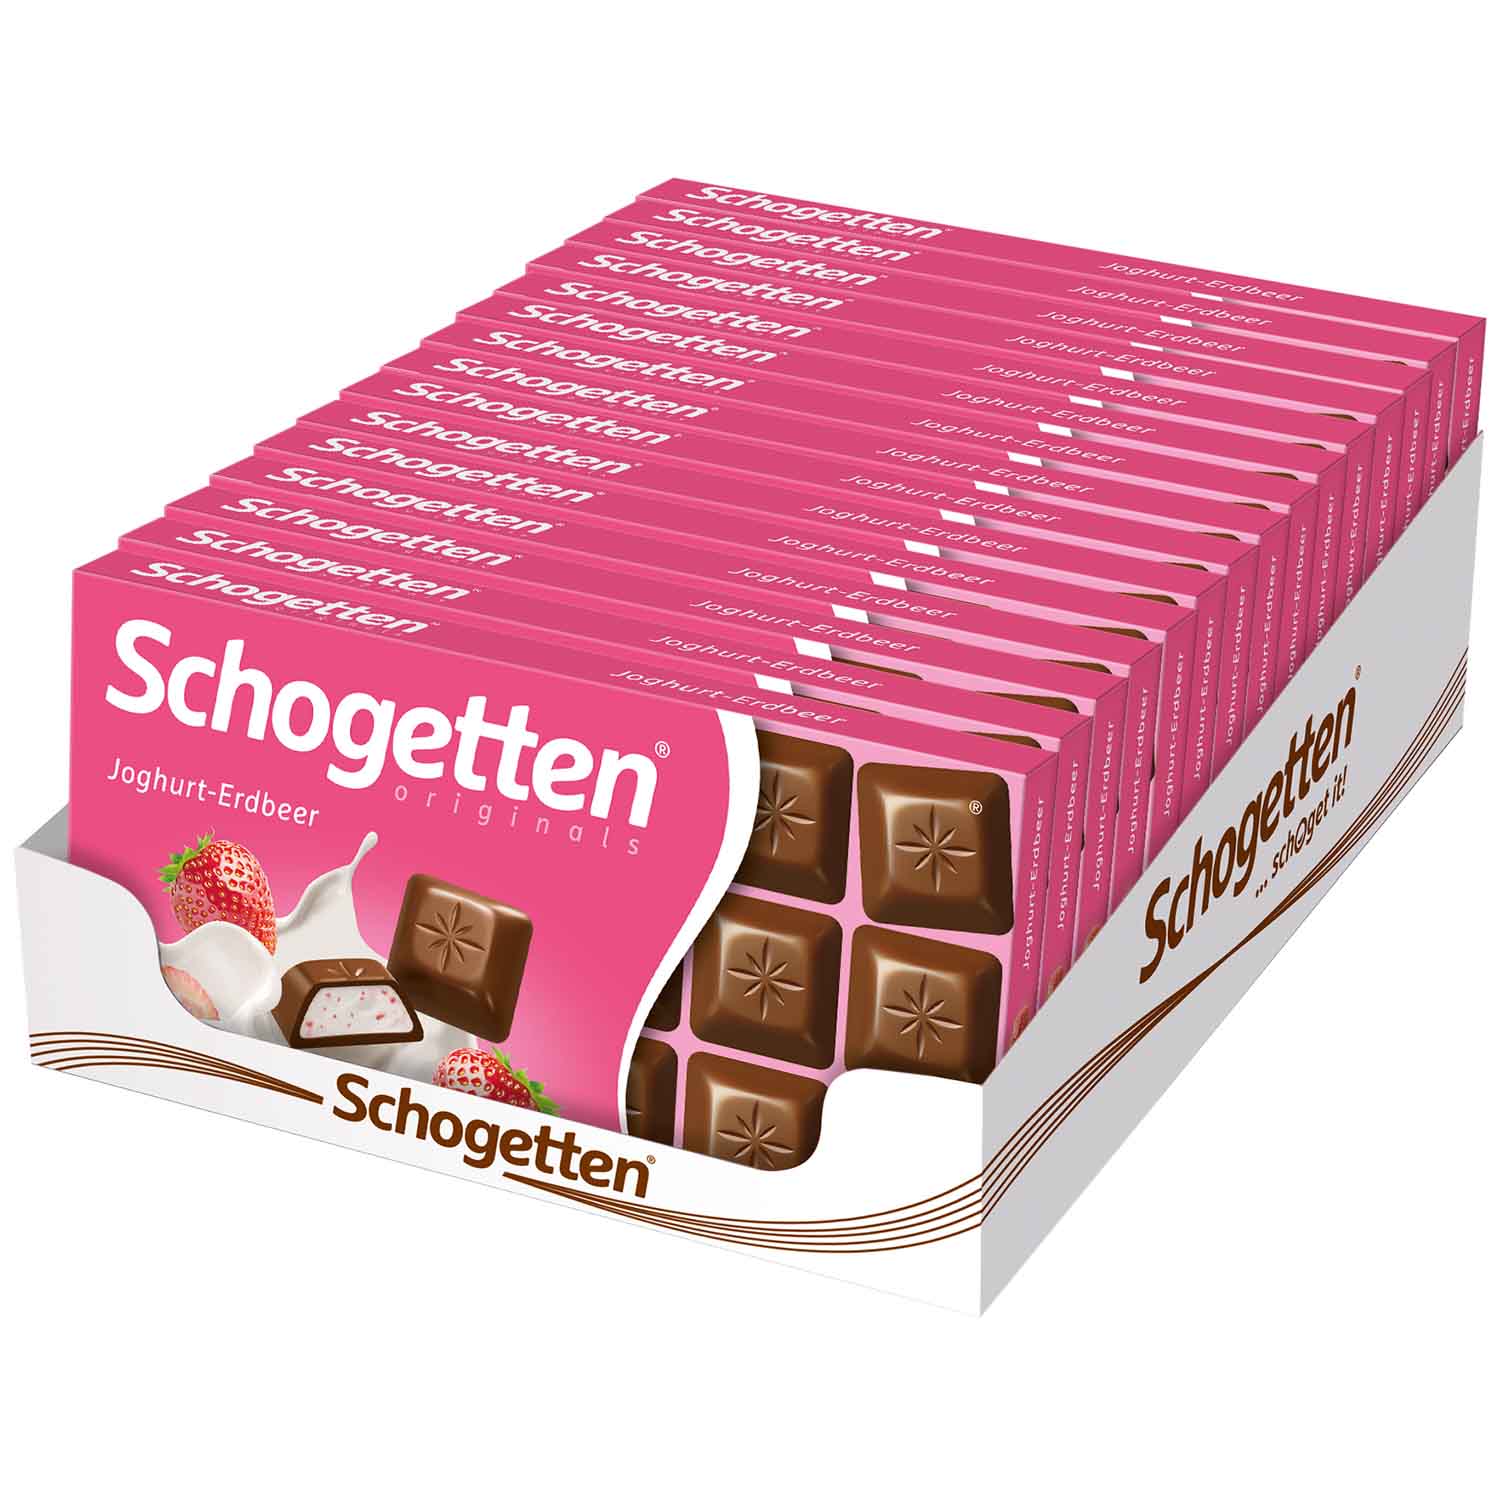 Schogetten Joghurt-Erdbeer 100g | Online kaufen im World of Sweets Shop